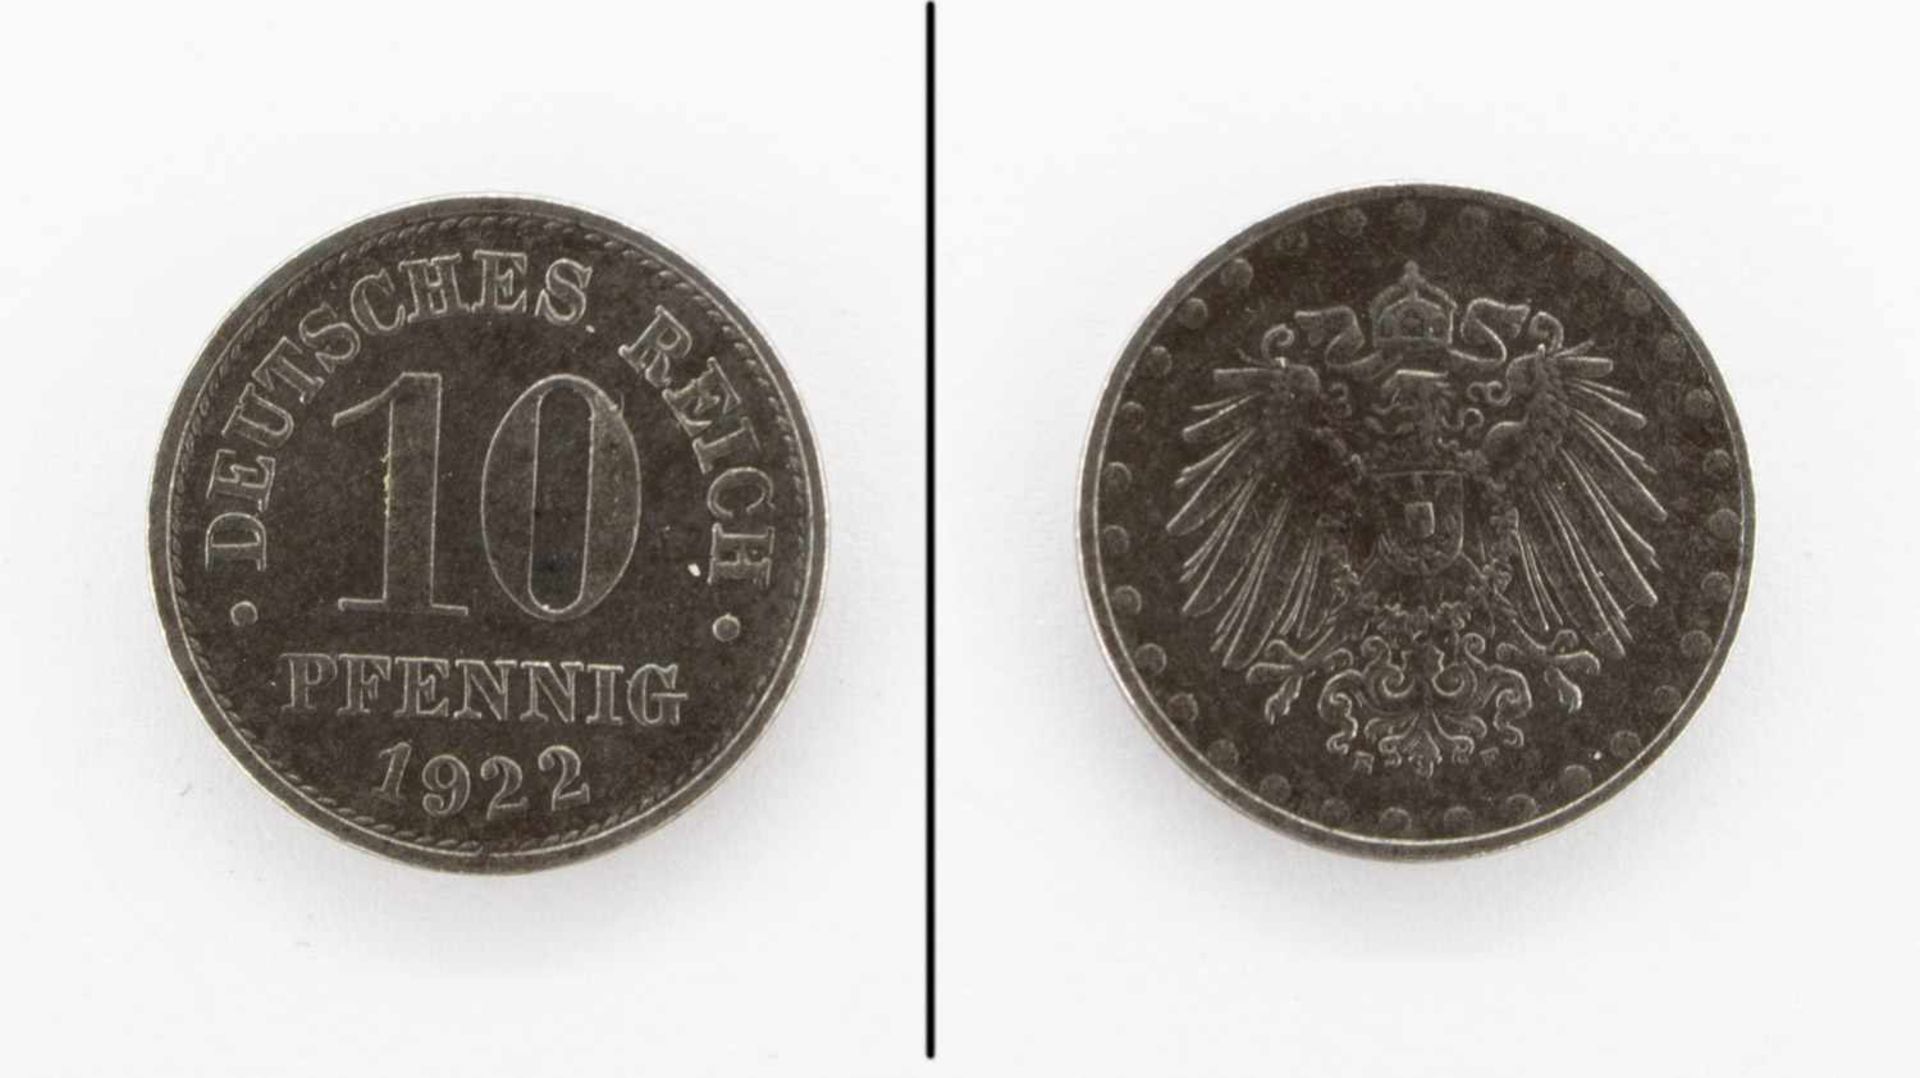 10 PfennigDeutsches Reich 1922 E, Eisen, vzgl.